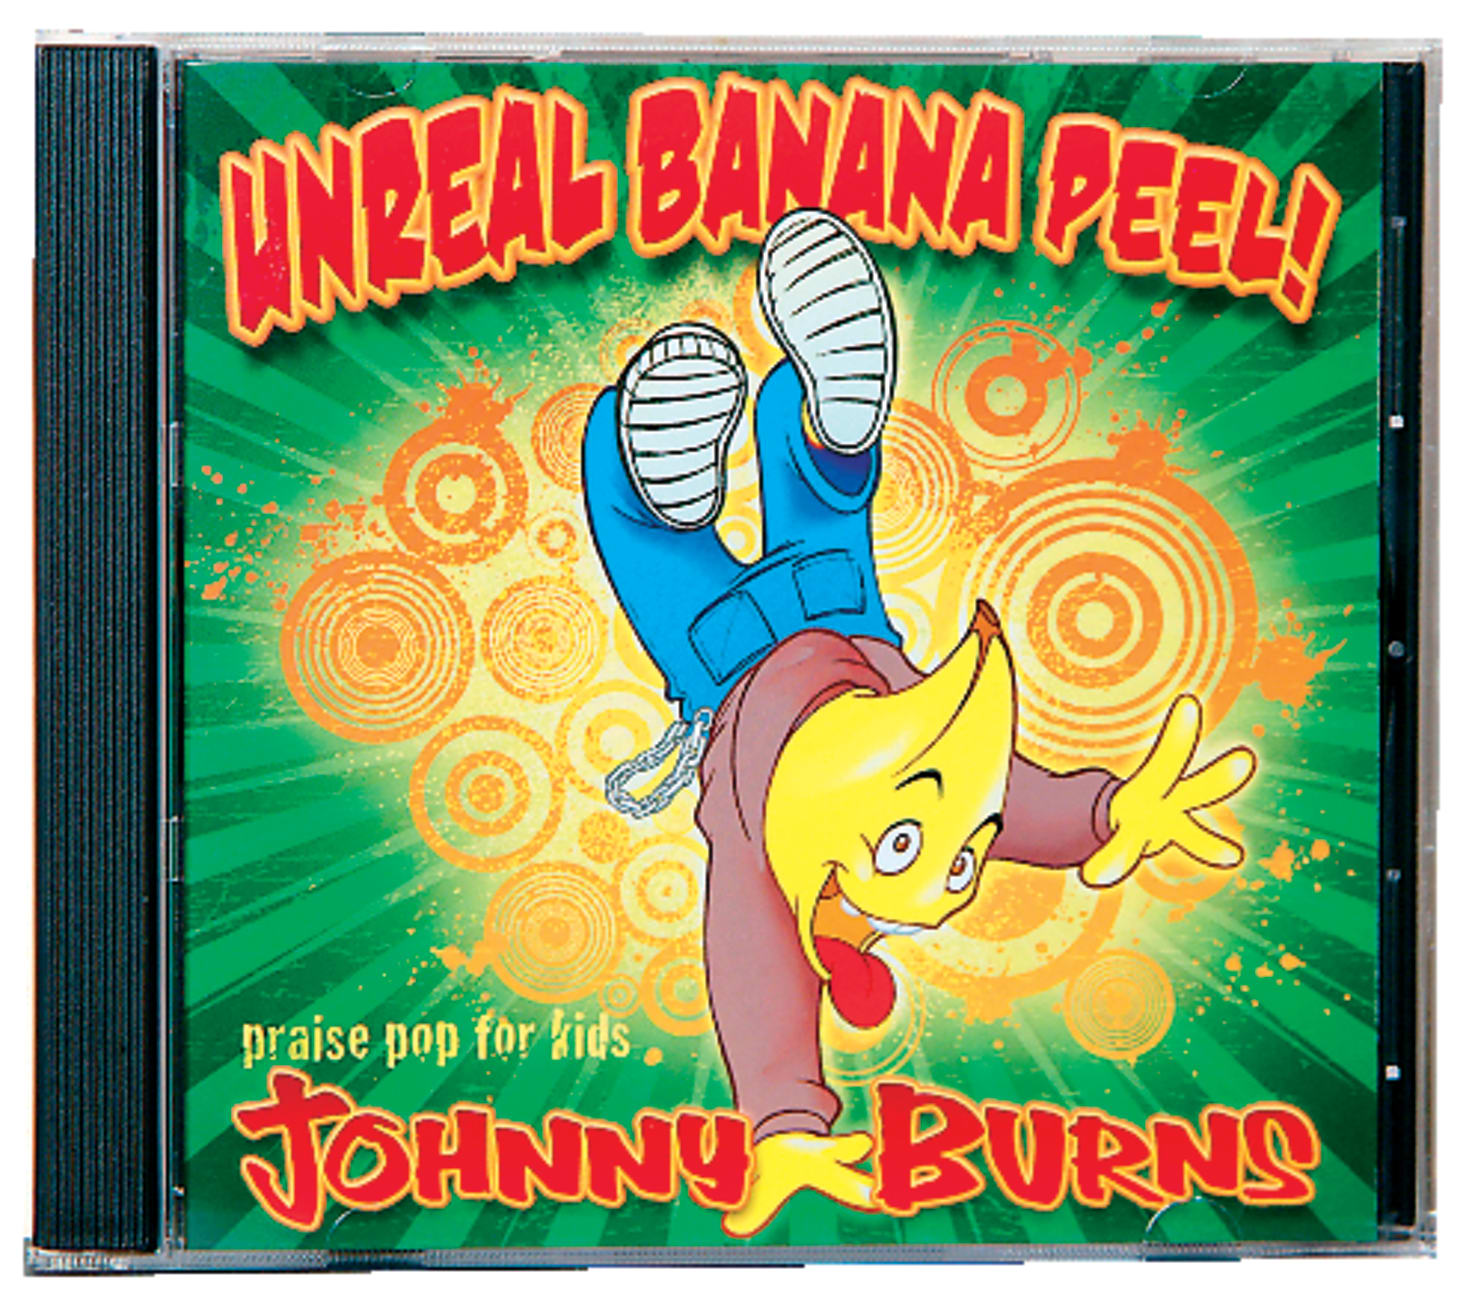 Unreal Banana Peel! by Johnny Burns | Koorong